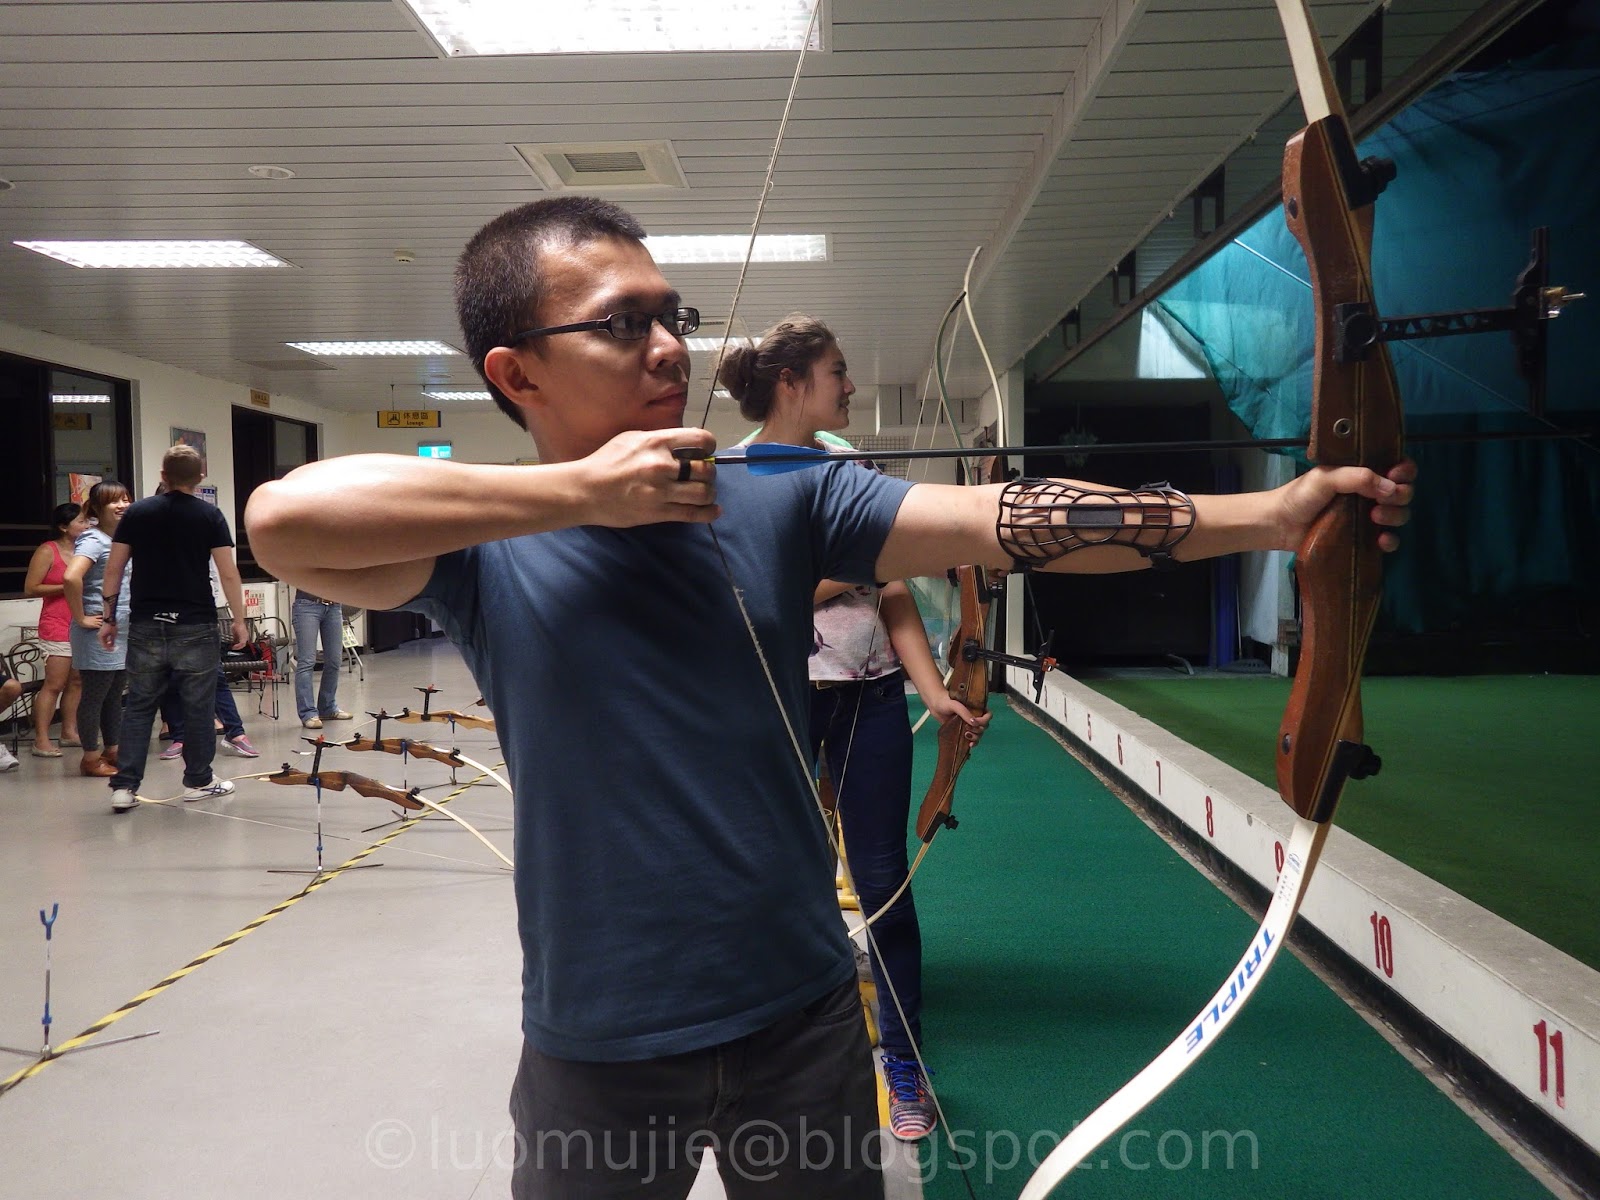 Taipei archery